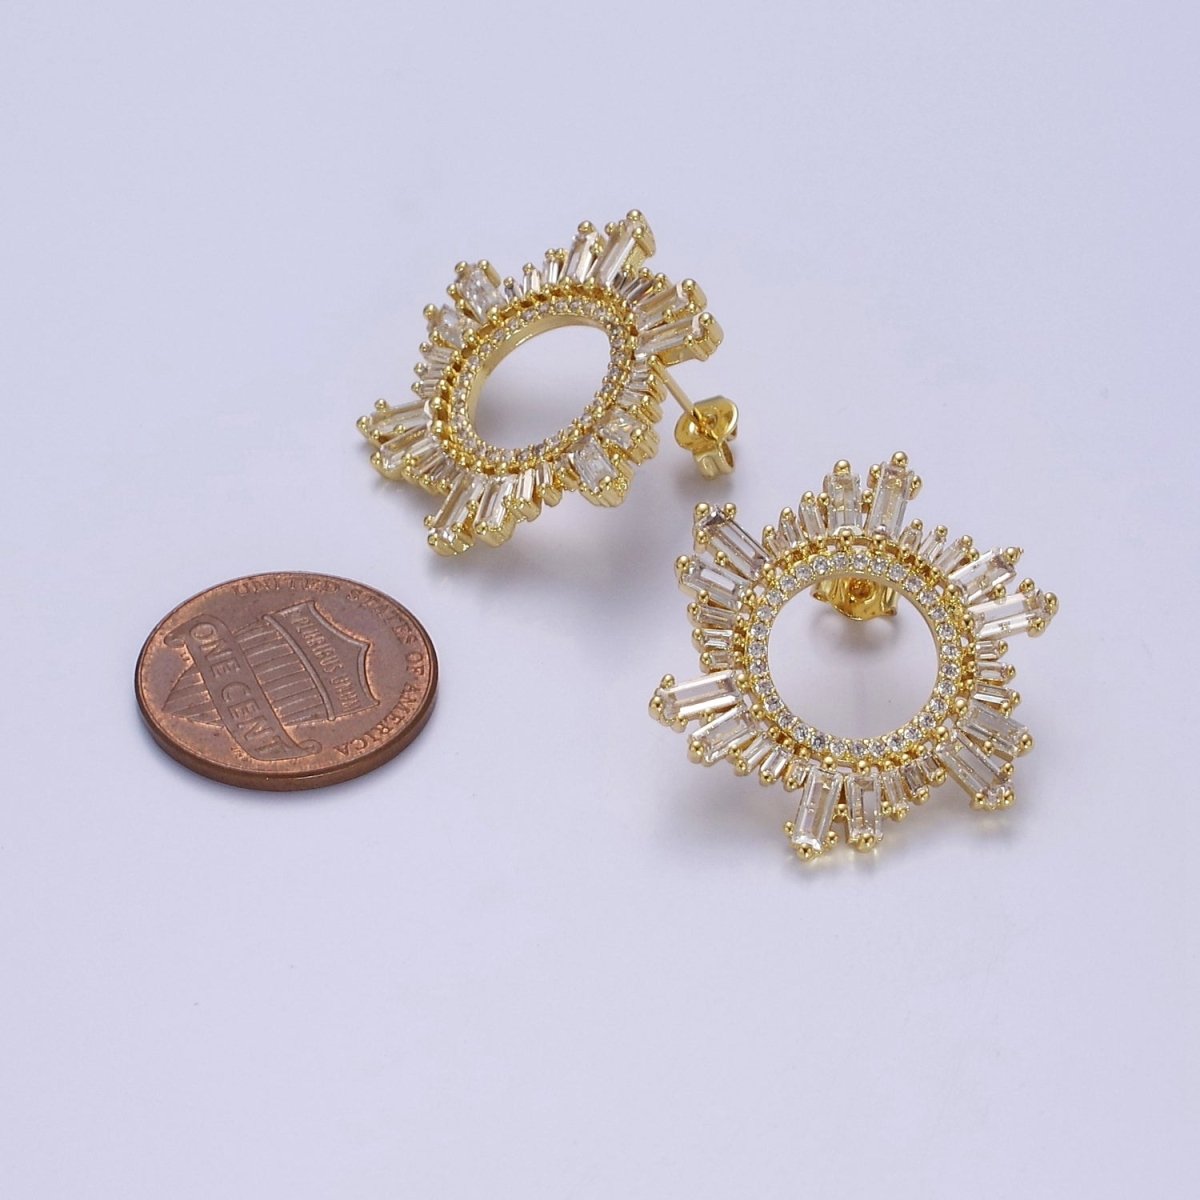 Sunburst Stud Earrings, Sun Ray Stud Earrings, CZ Sunburst Celestial Earring in Gold Filled / Silver V-134 V-135 - DLUXCA